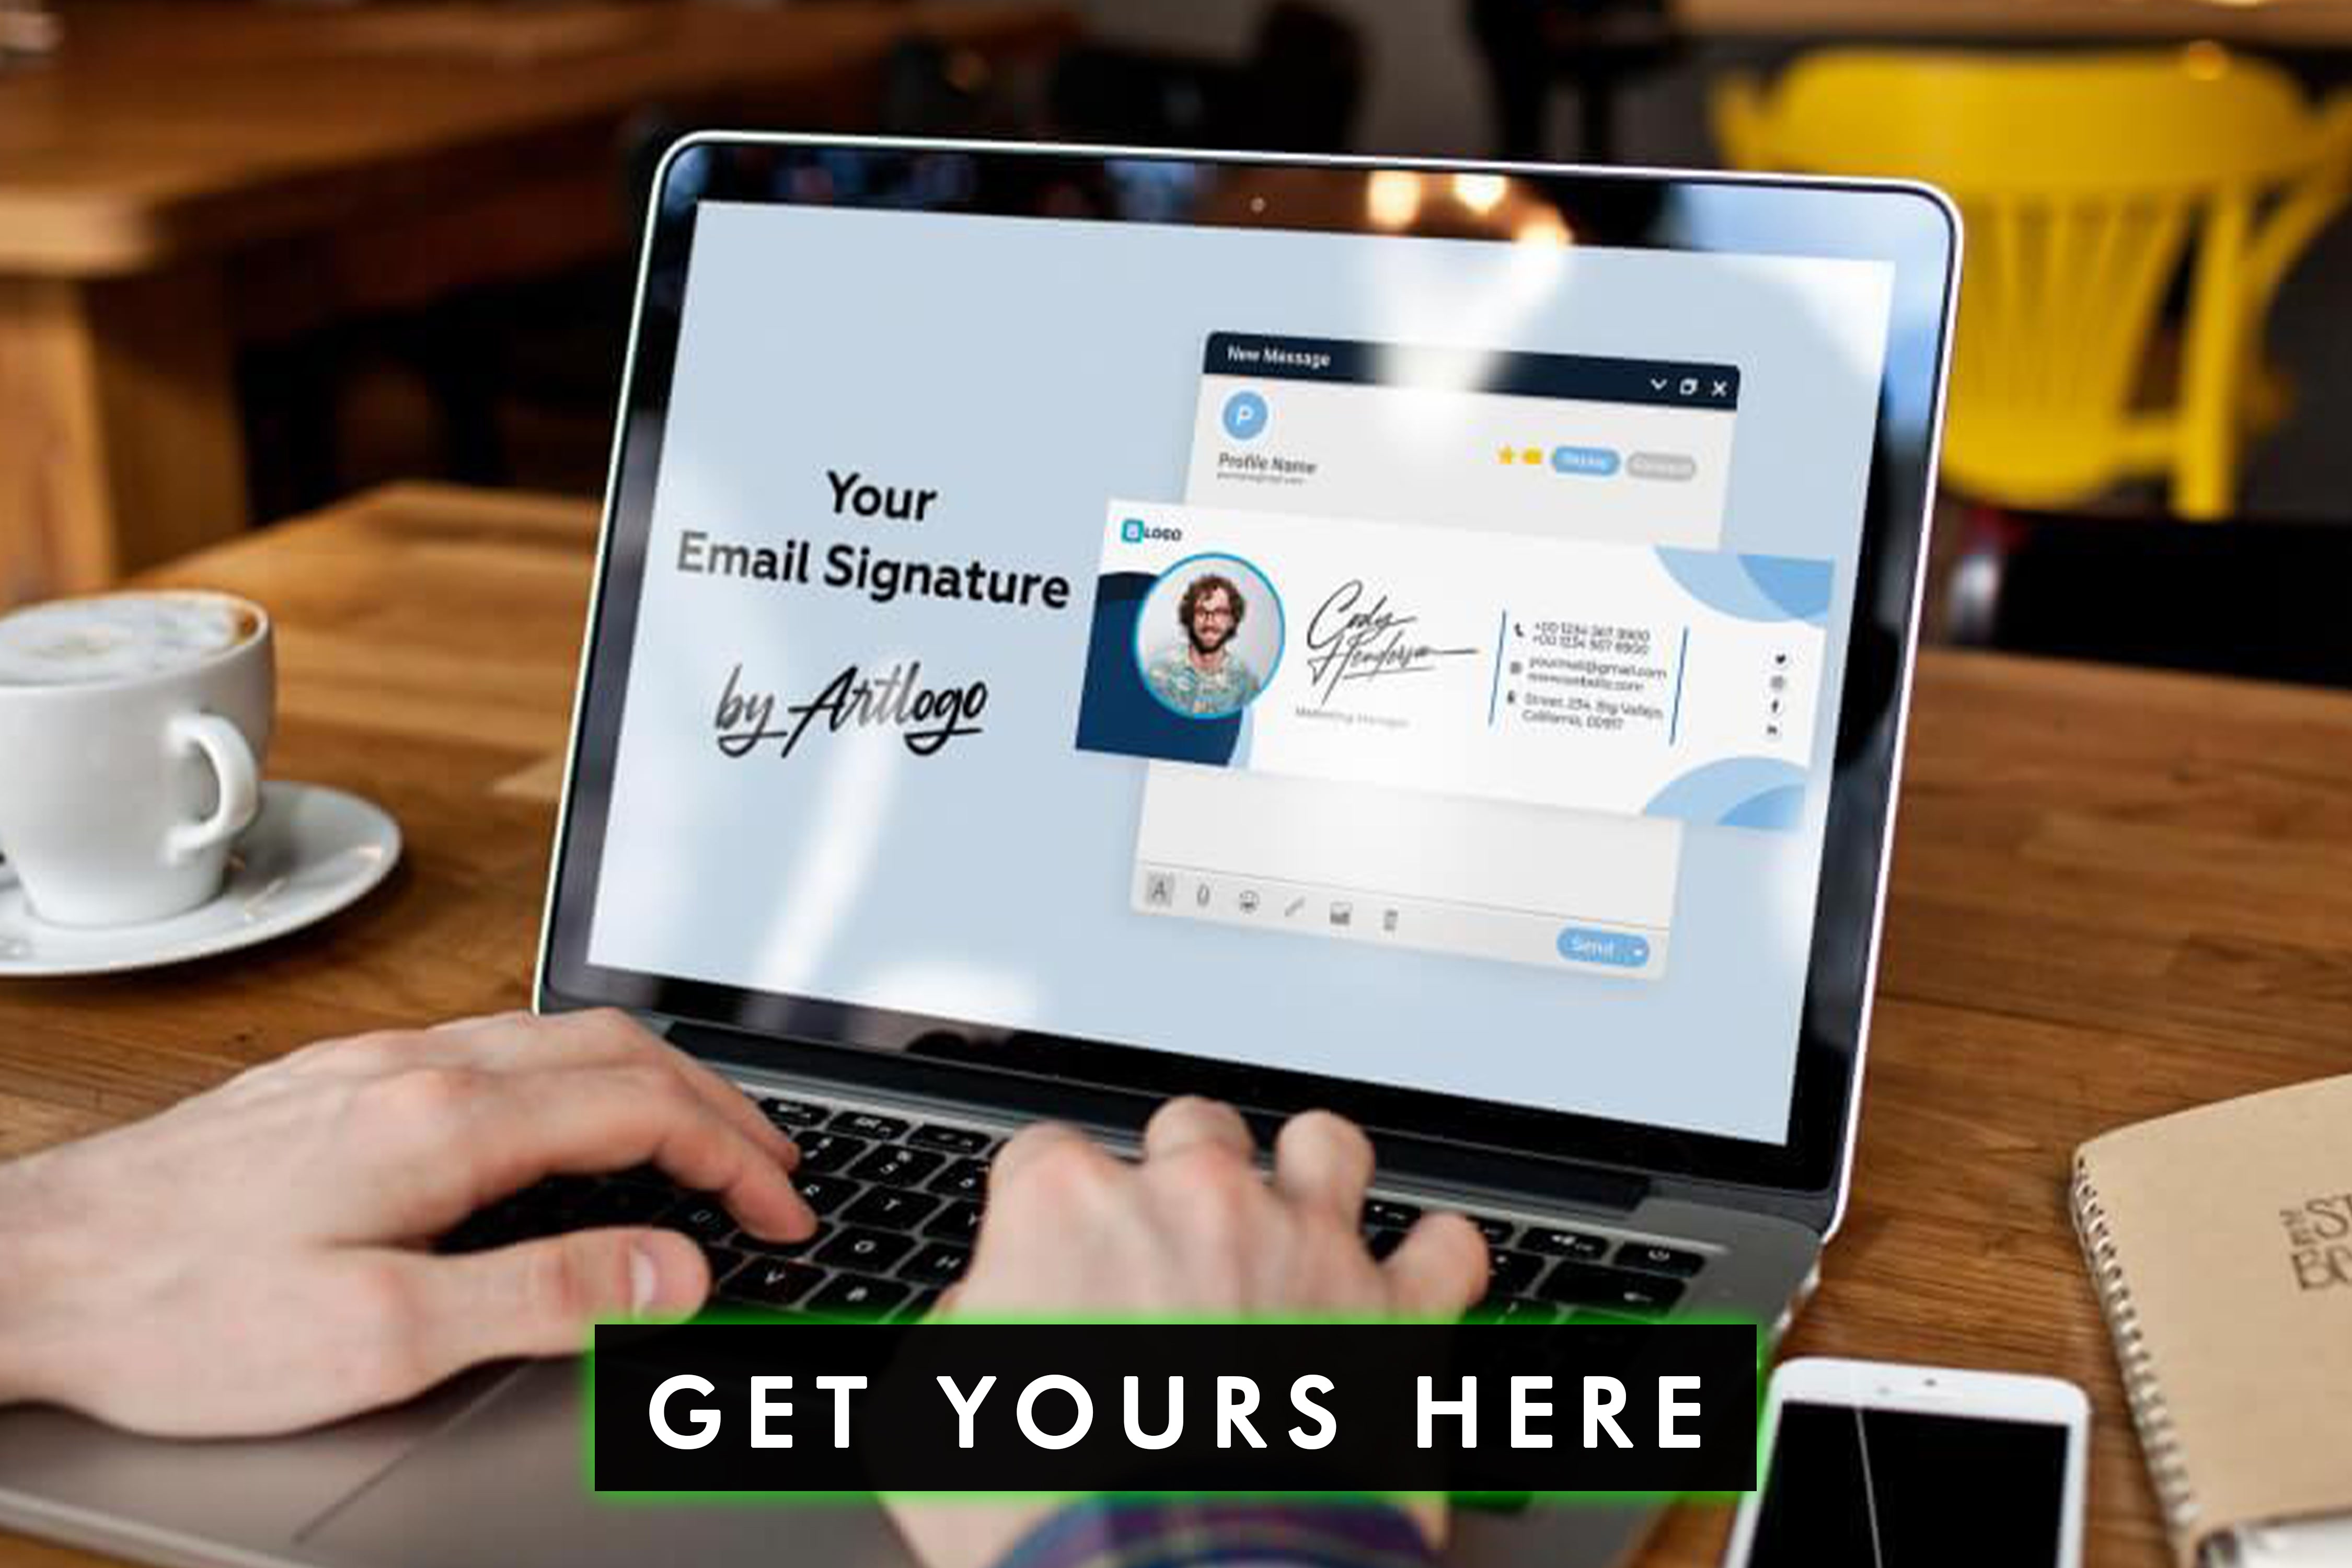 Verbessern Sie Ihr Markenimage und sorgen Sie für Konsistenz mit einer standardisierten Firmen-E-Mail-Signatur, die Ihre Markenwerte und Identität repräsentiert.